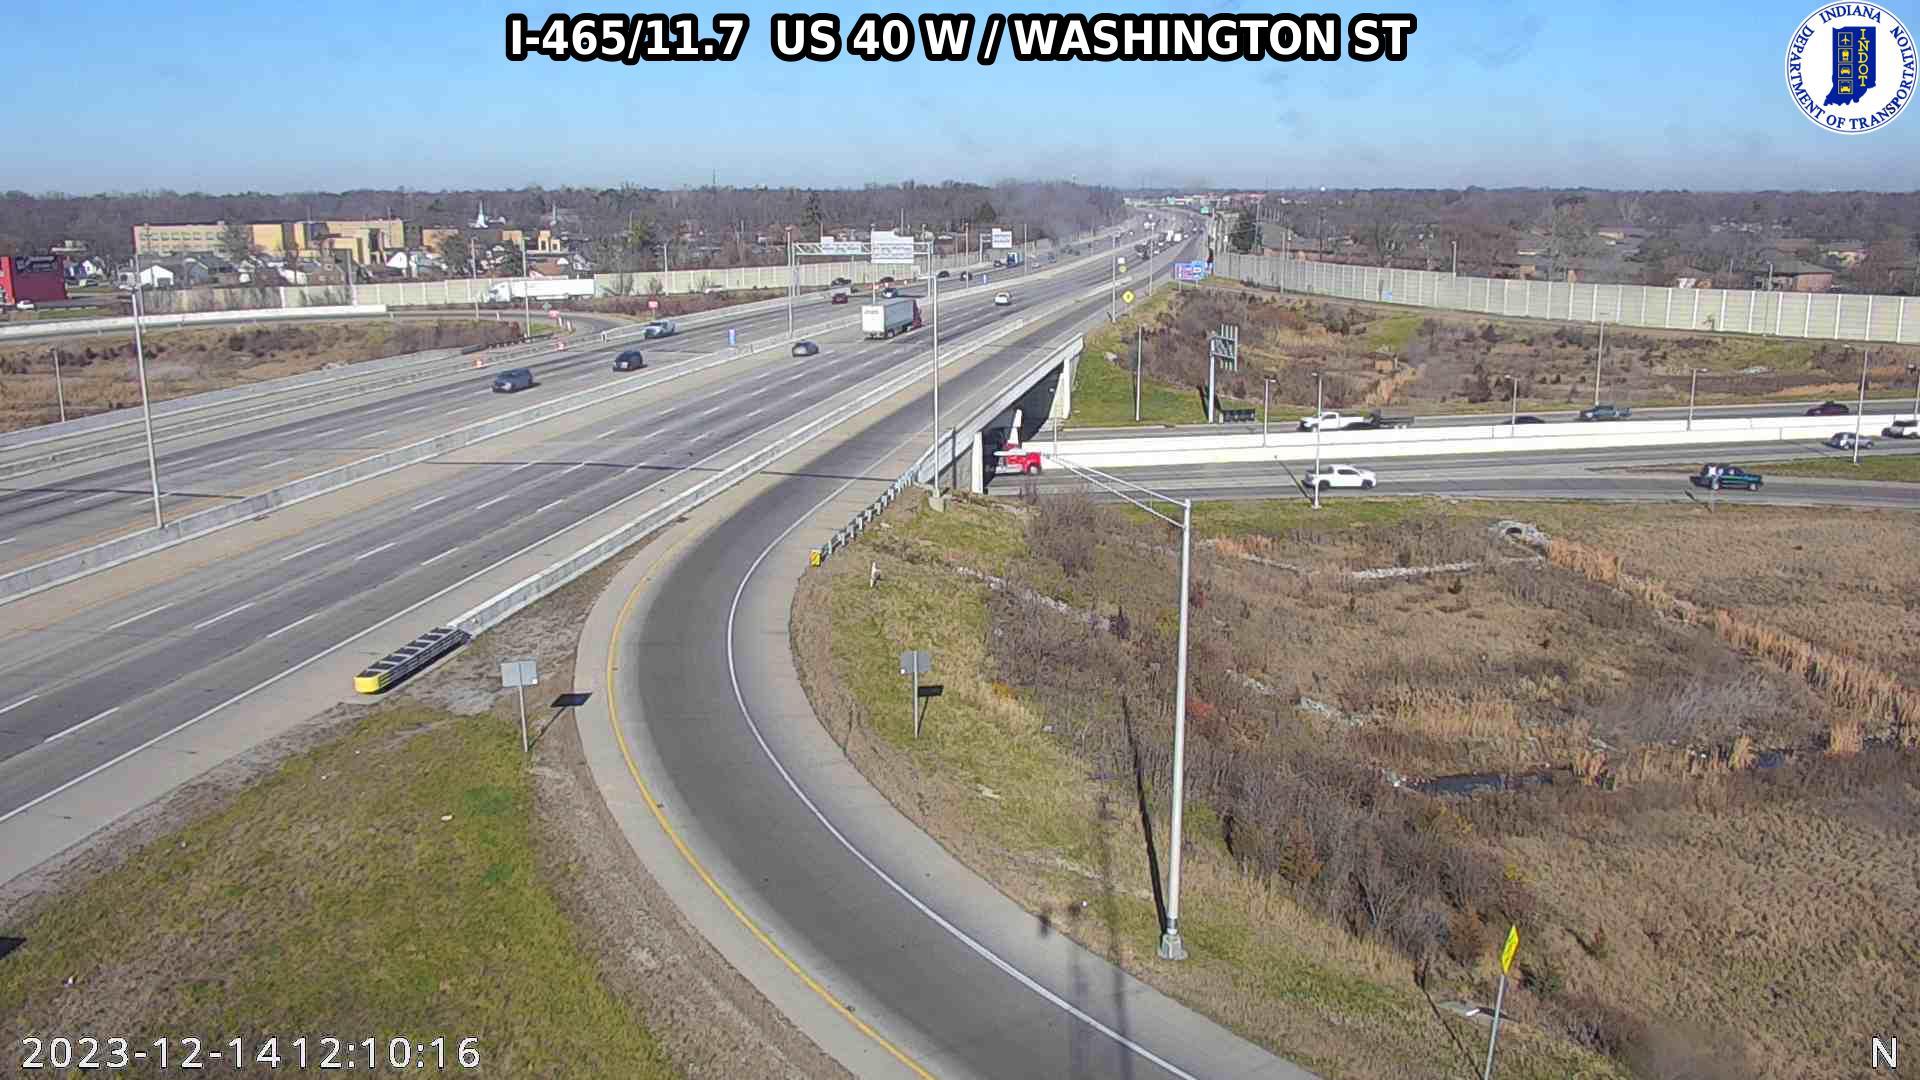 Traffic Cam Indianapolis: I-465: I-465/11.7 US 40 W - WASHINGTON ST Player